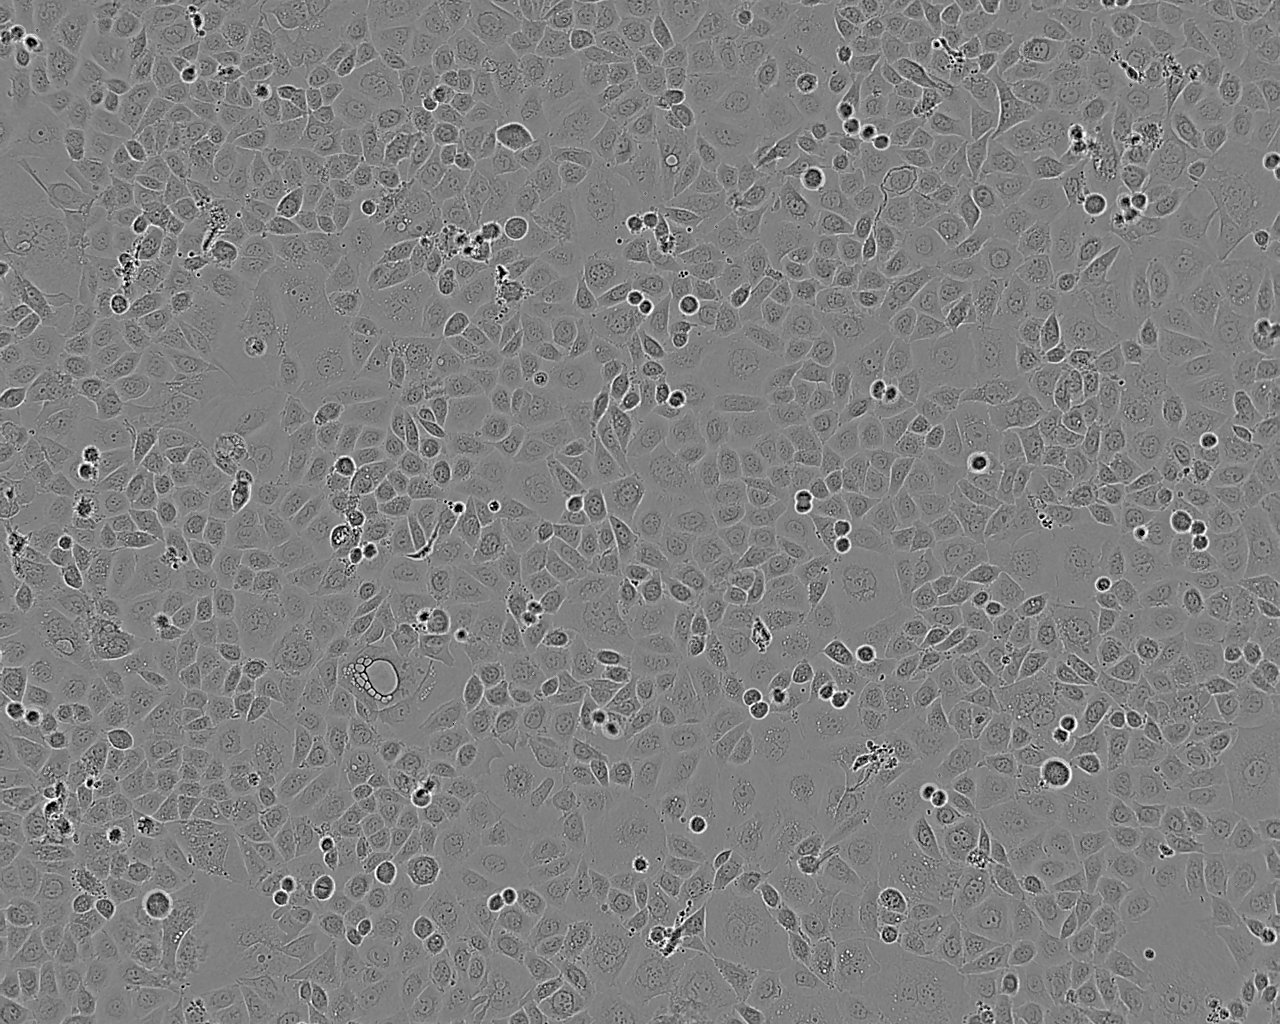 COS-7 SV40转化的非洲绿猴肾细胞系,COS-7